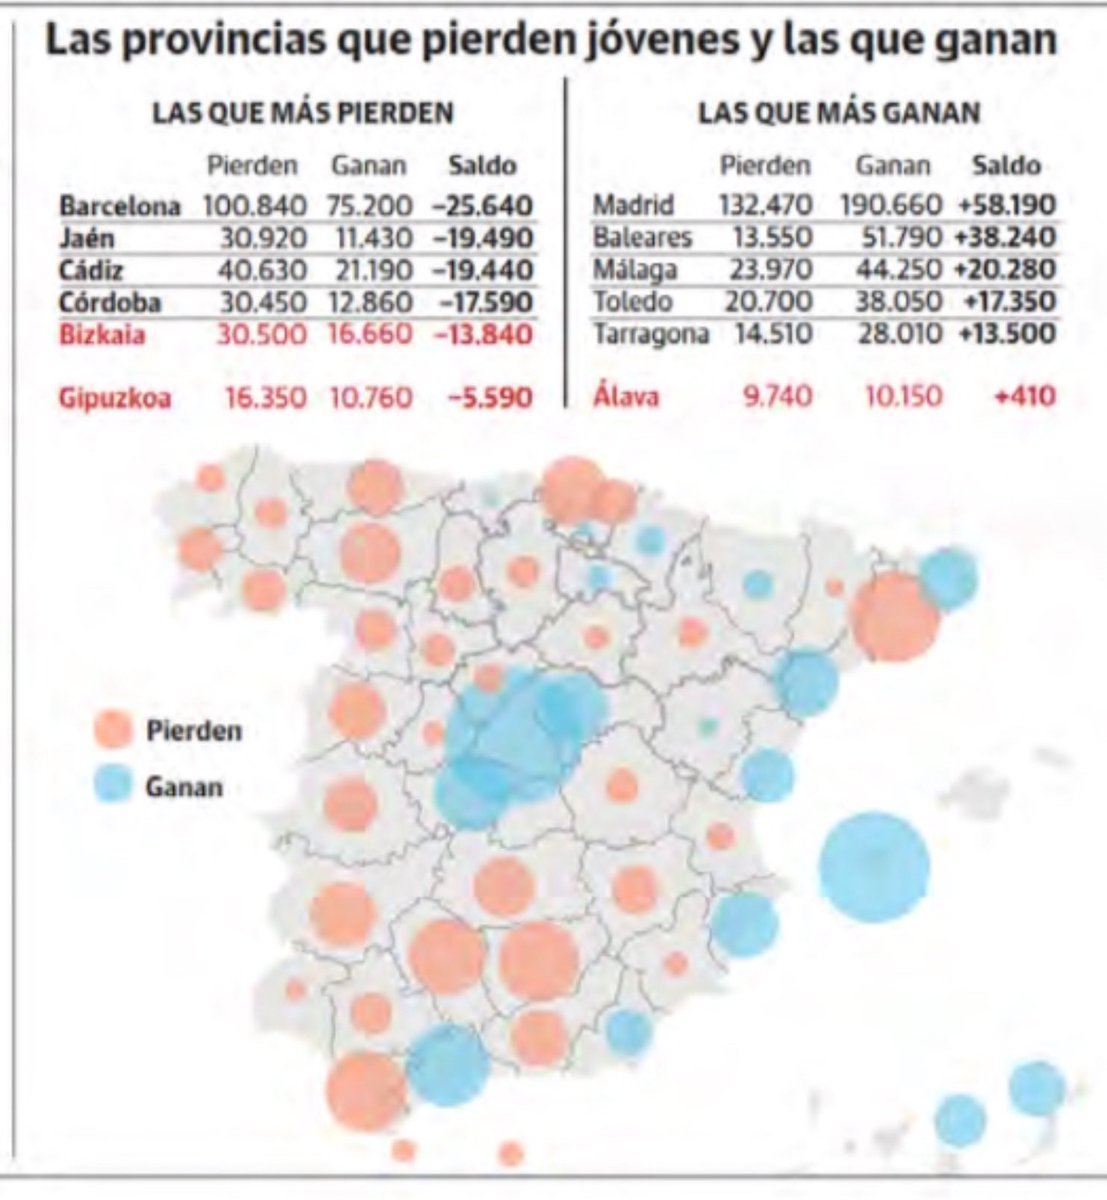 Barcelona, la provincia de la que se van más jóvenes (25.640); Madrid, la que capta más (58.190) elcorreo.com/bizkaia/cinco-…